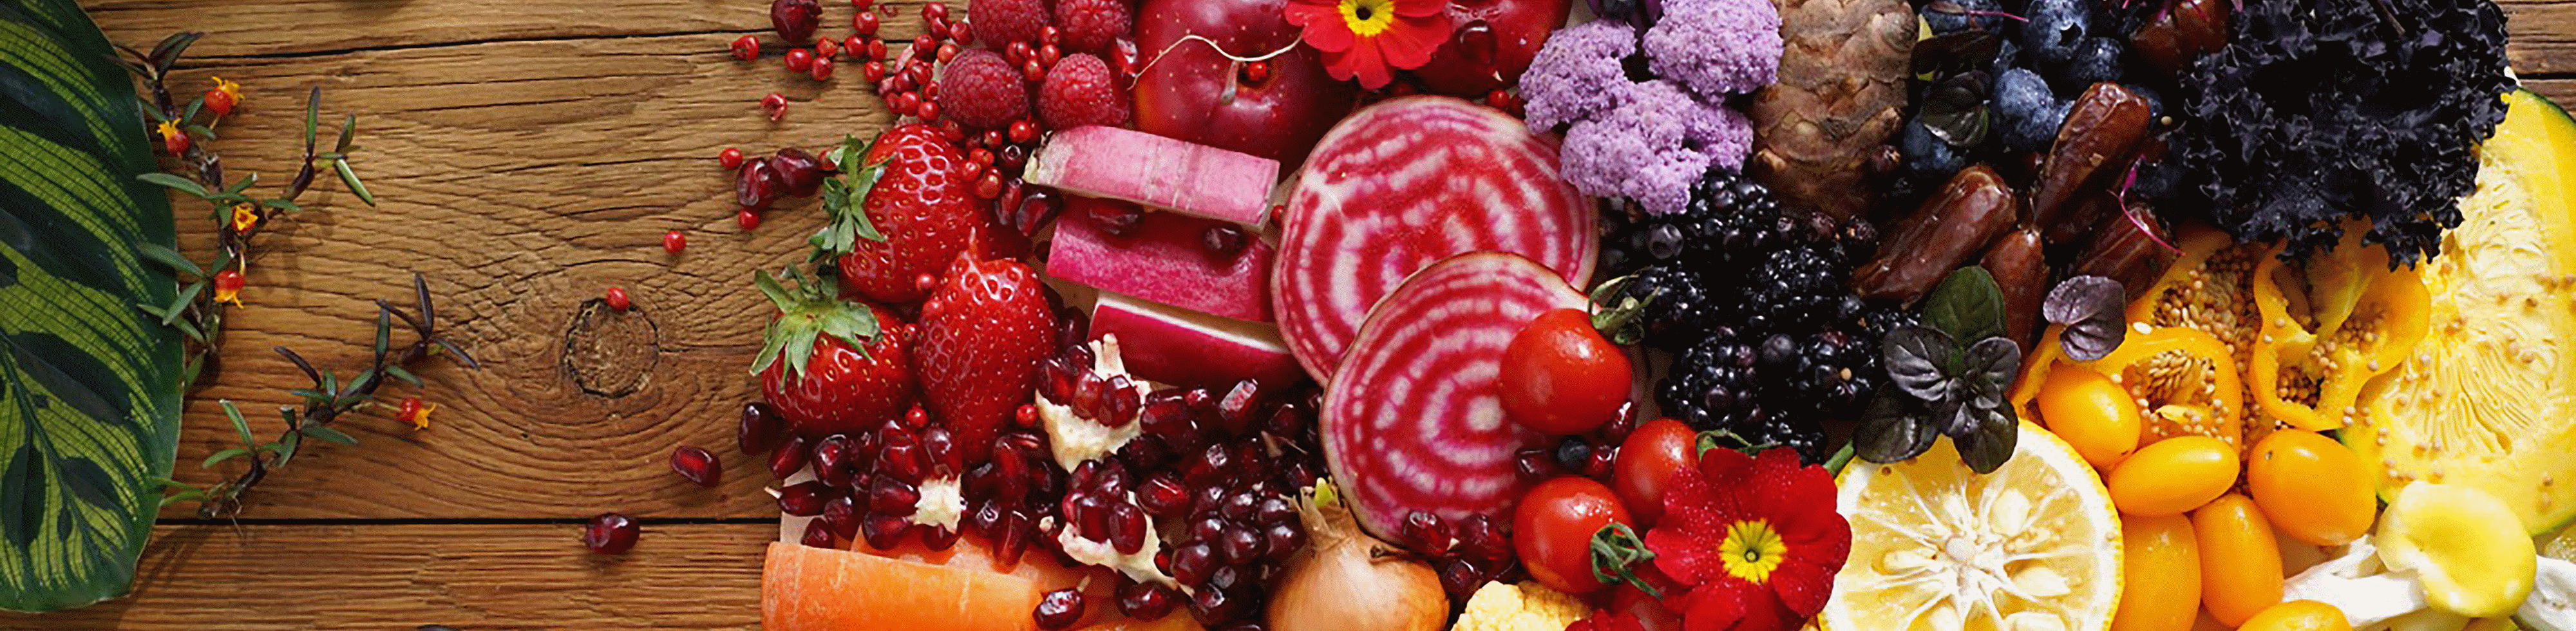 Slika barvite zelenjave in sadja, posneta s tem objektivom pri visoki ločljivosti na celotni sliki.